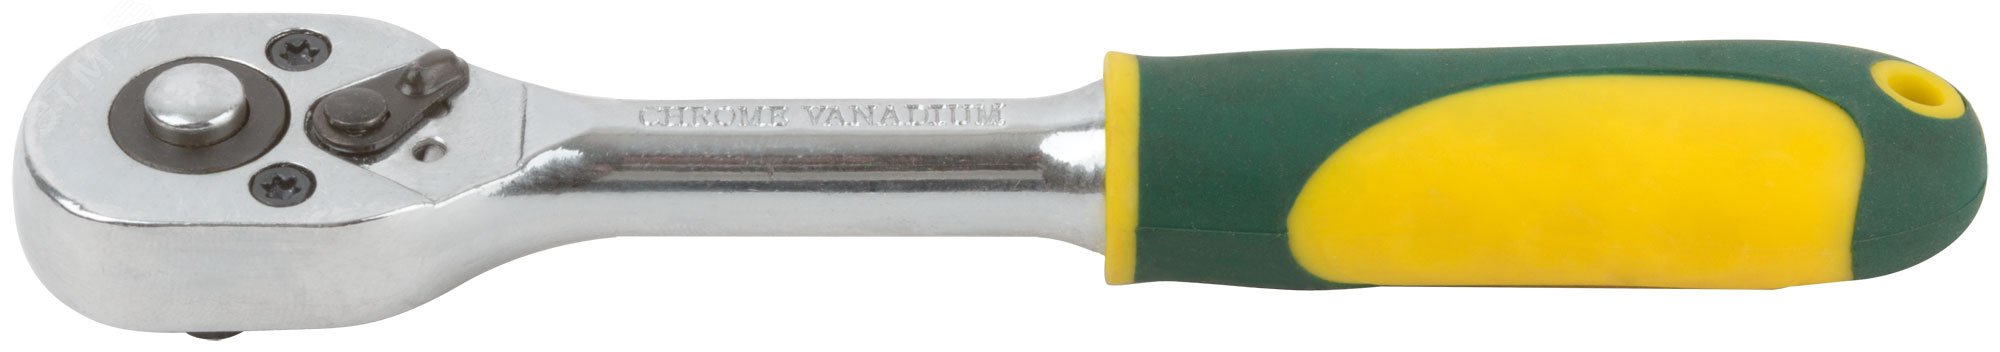 Вороток (трещотка) CrV механизм, пластиковая прорезиненная ручка 1/4'', 24 зубца 62375 FIT - превью